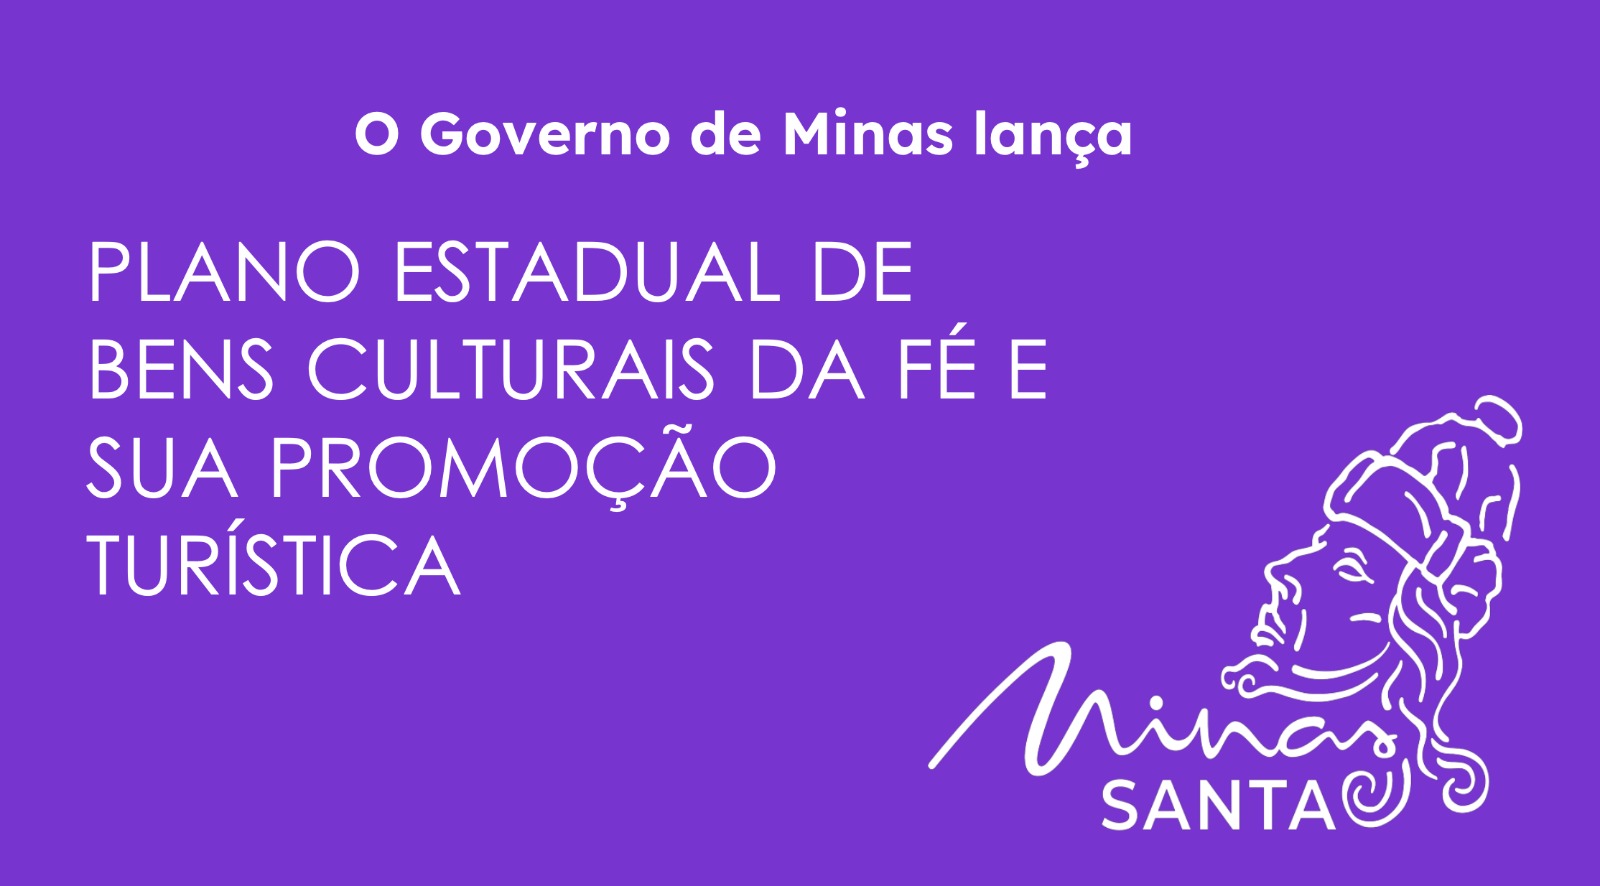 Confira a apresentação do plano estadual e do projeto Minas Santa voltados ao turismo da fé